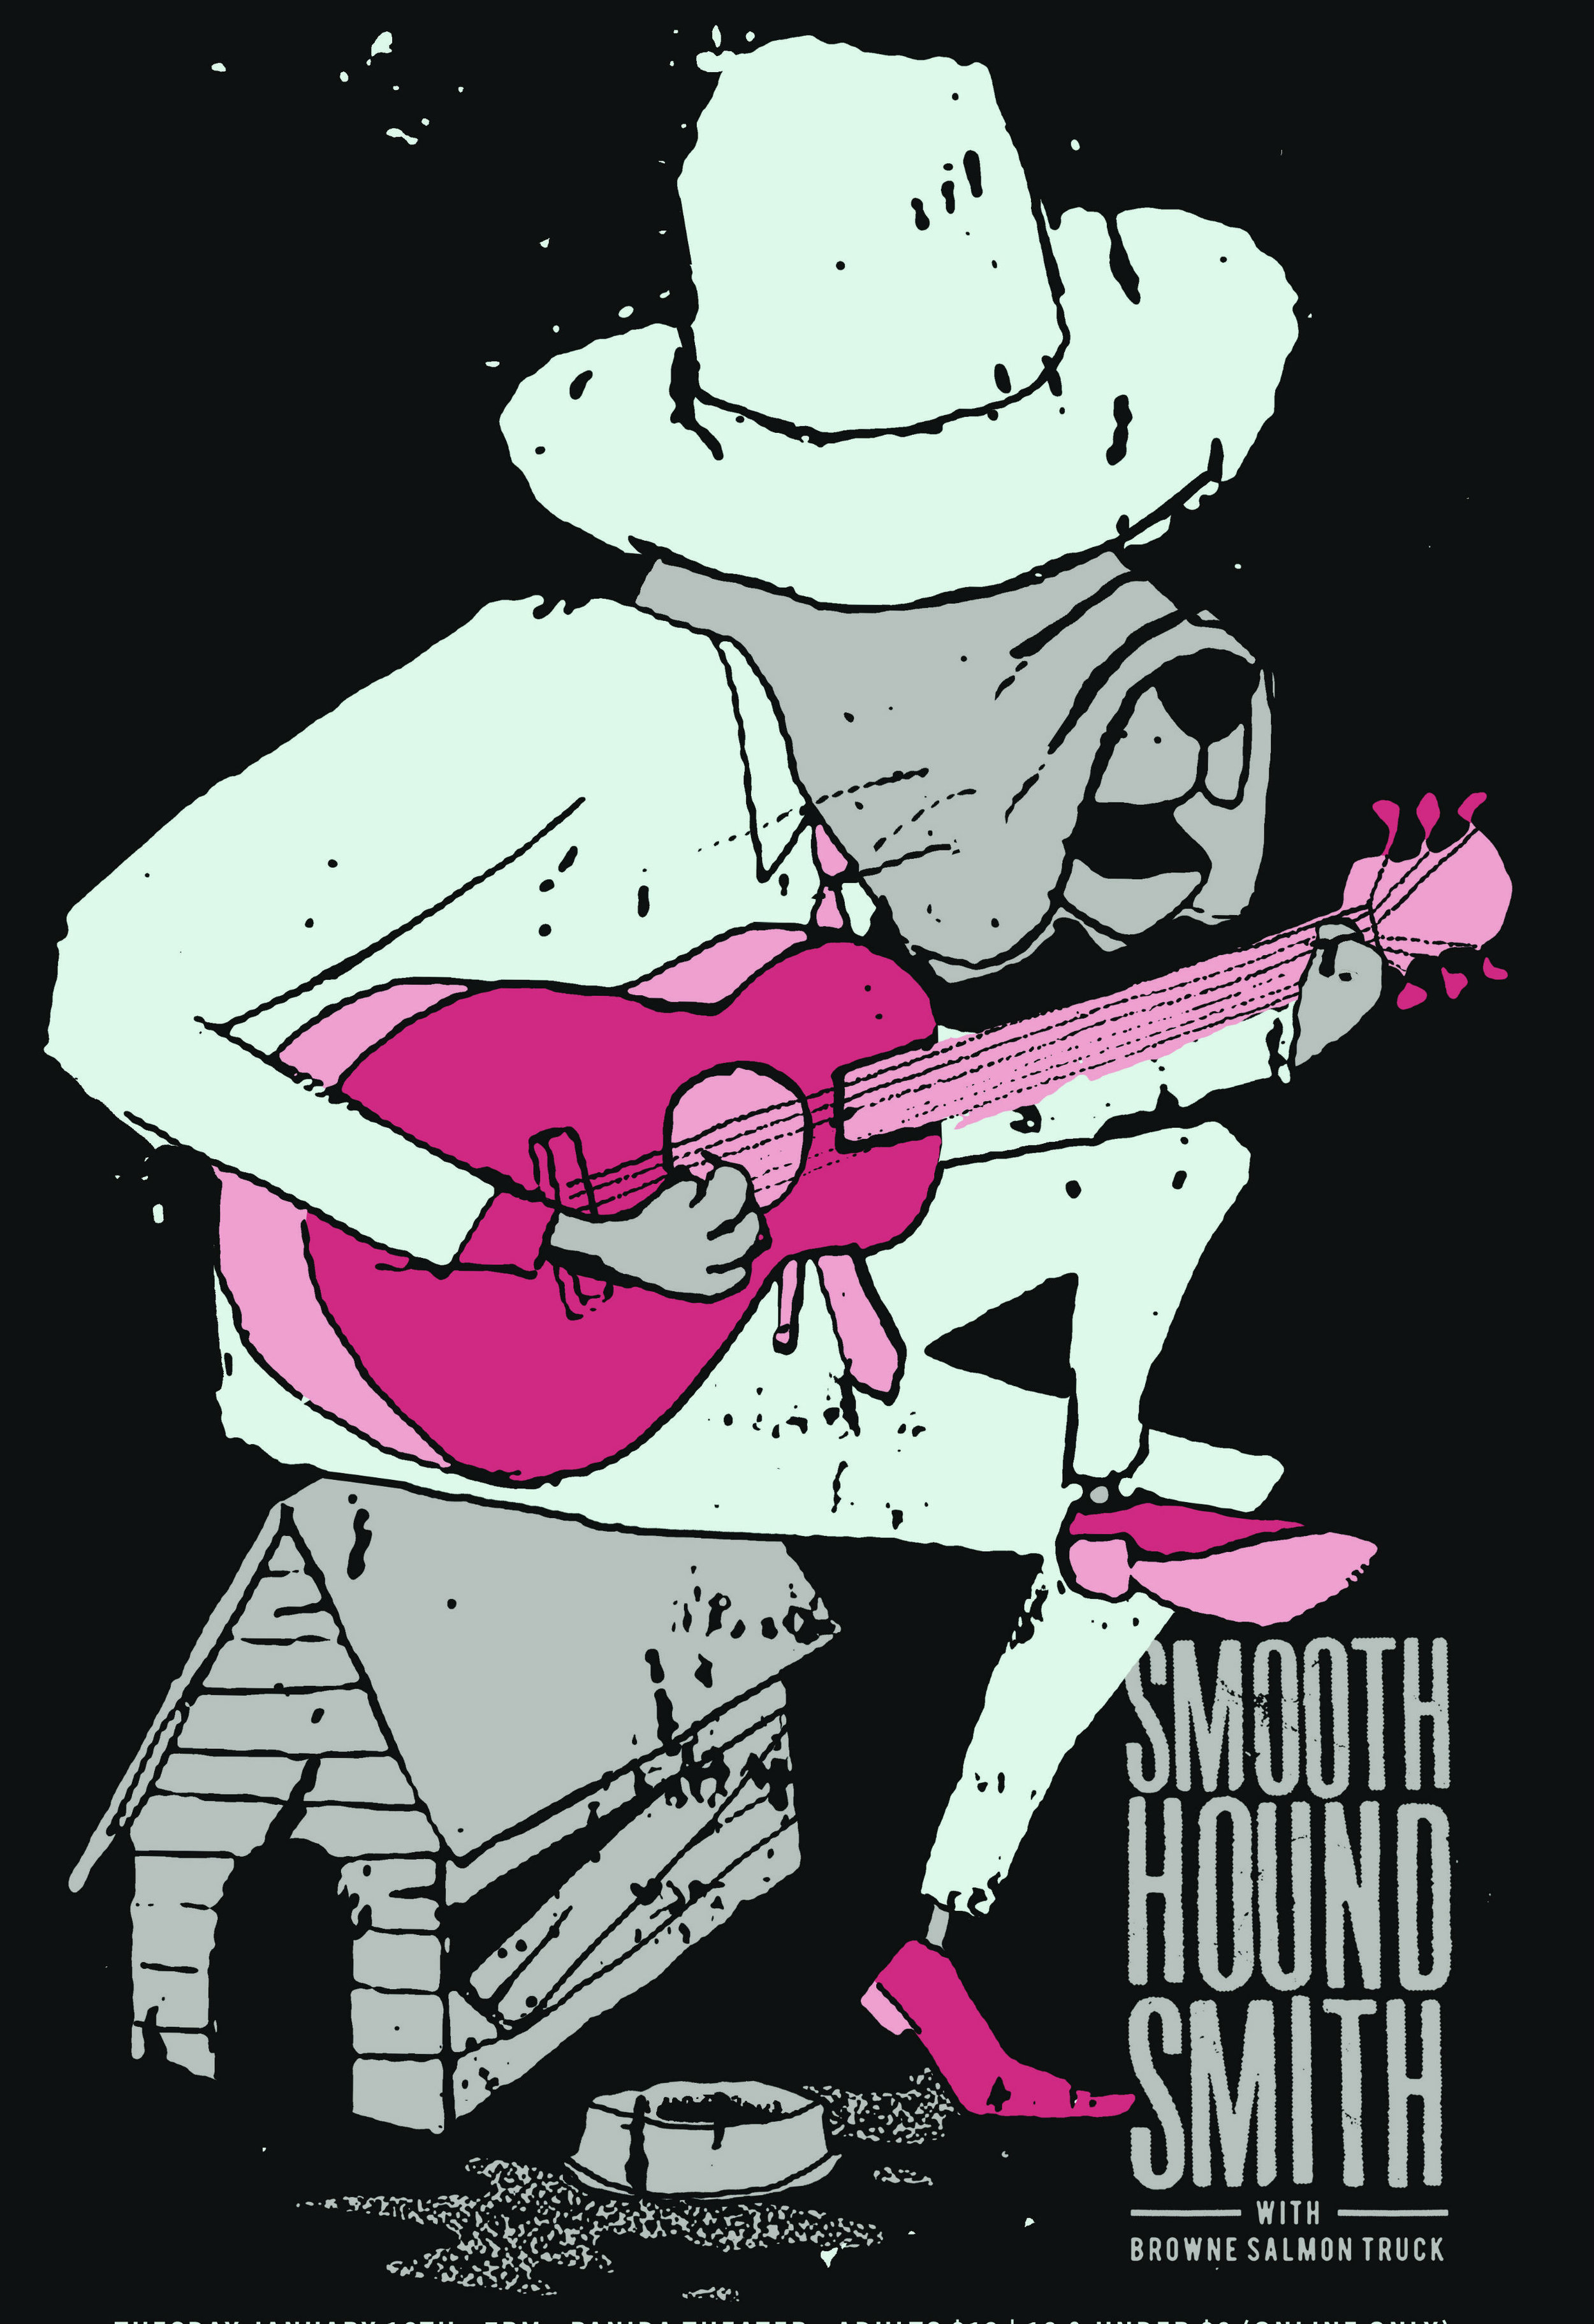 MATTOX_smooth_hound_smith_shirt.jpg